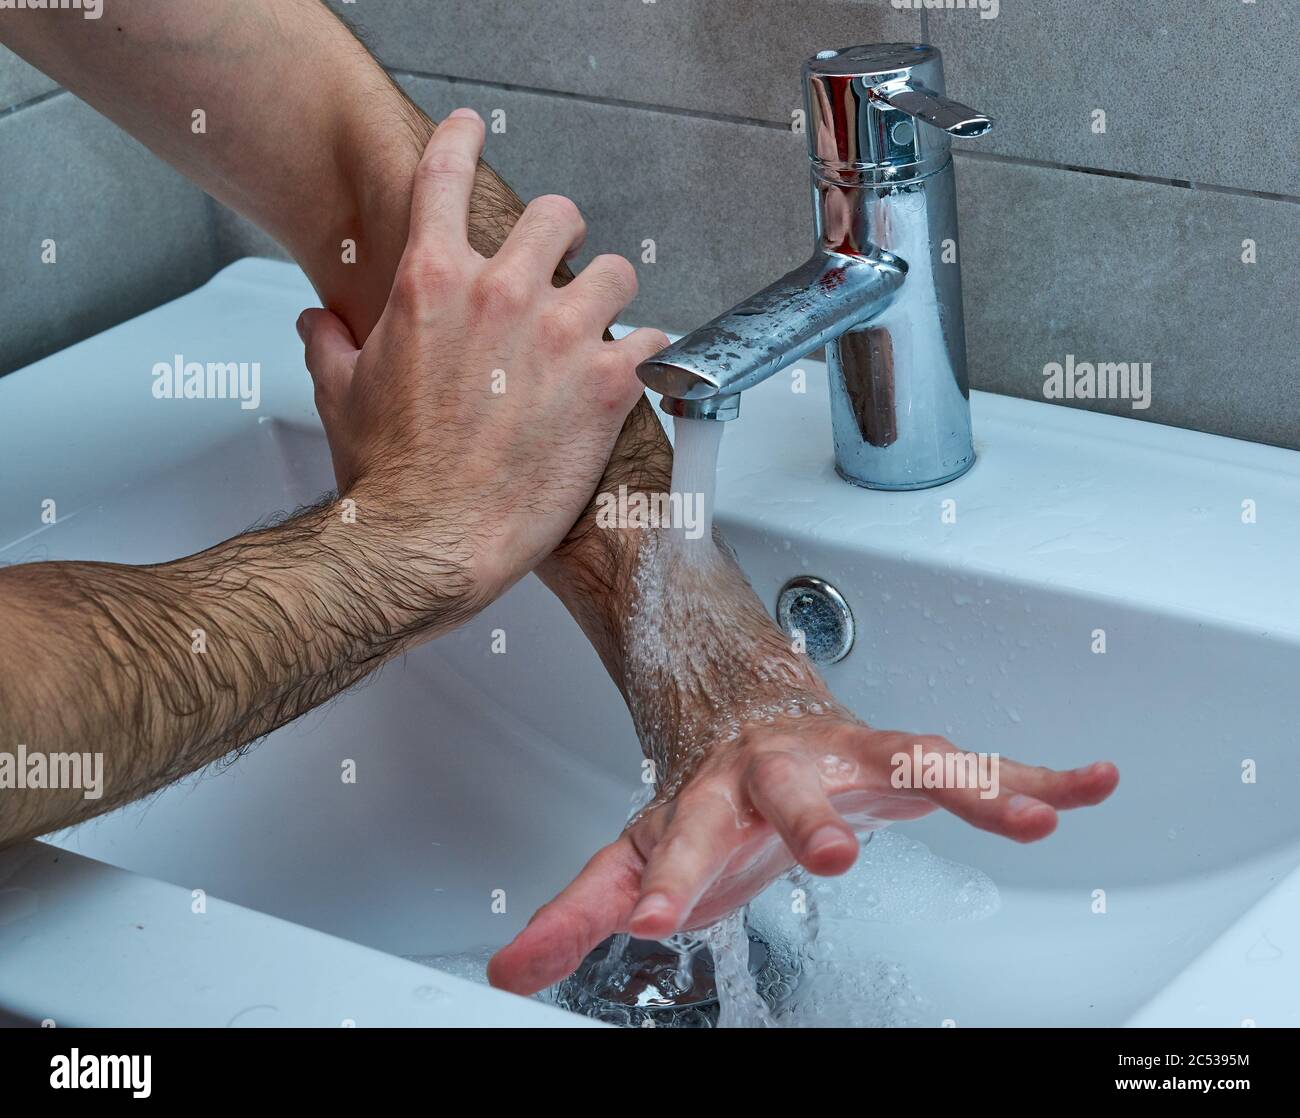 Modi corretti per lavare le mani. Suggerimenti per la precauzione Covid. Foto Stock